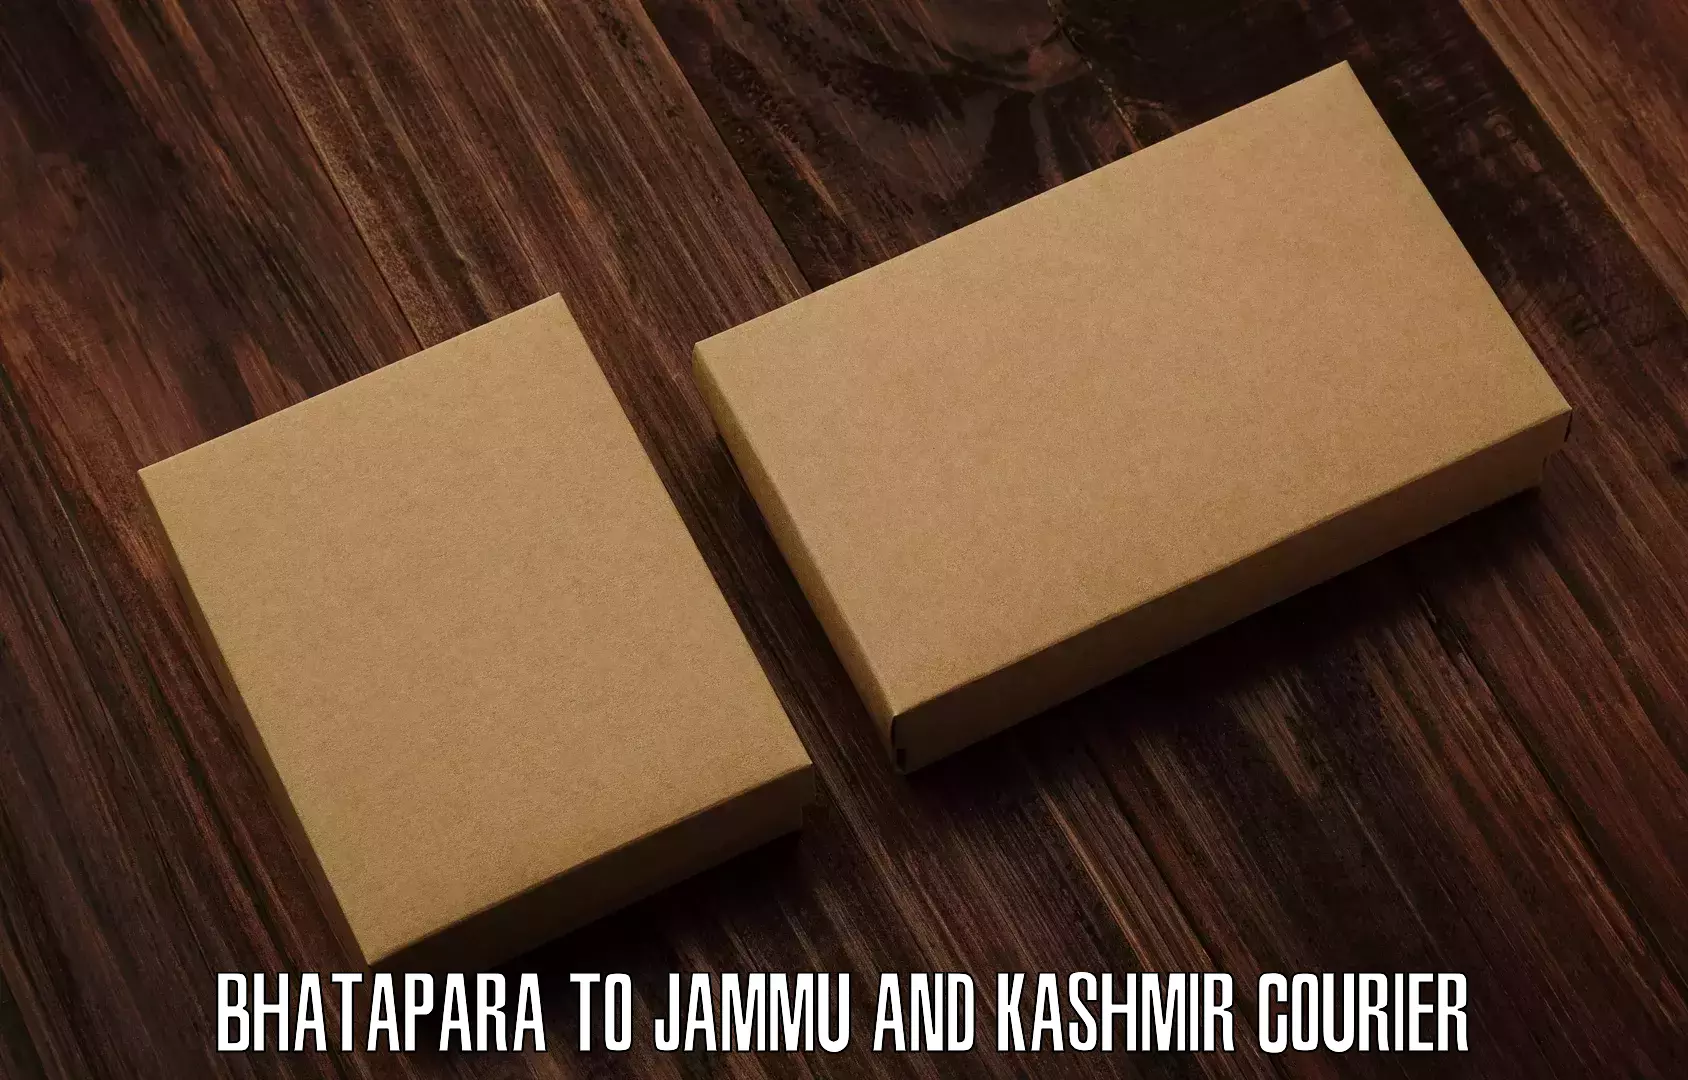 Next-day freight services Bhatapara to Jammu